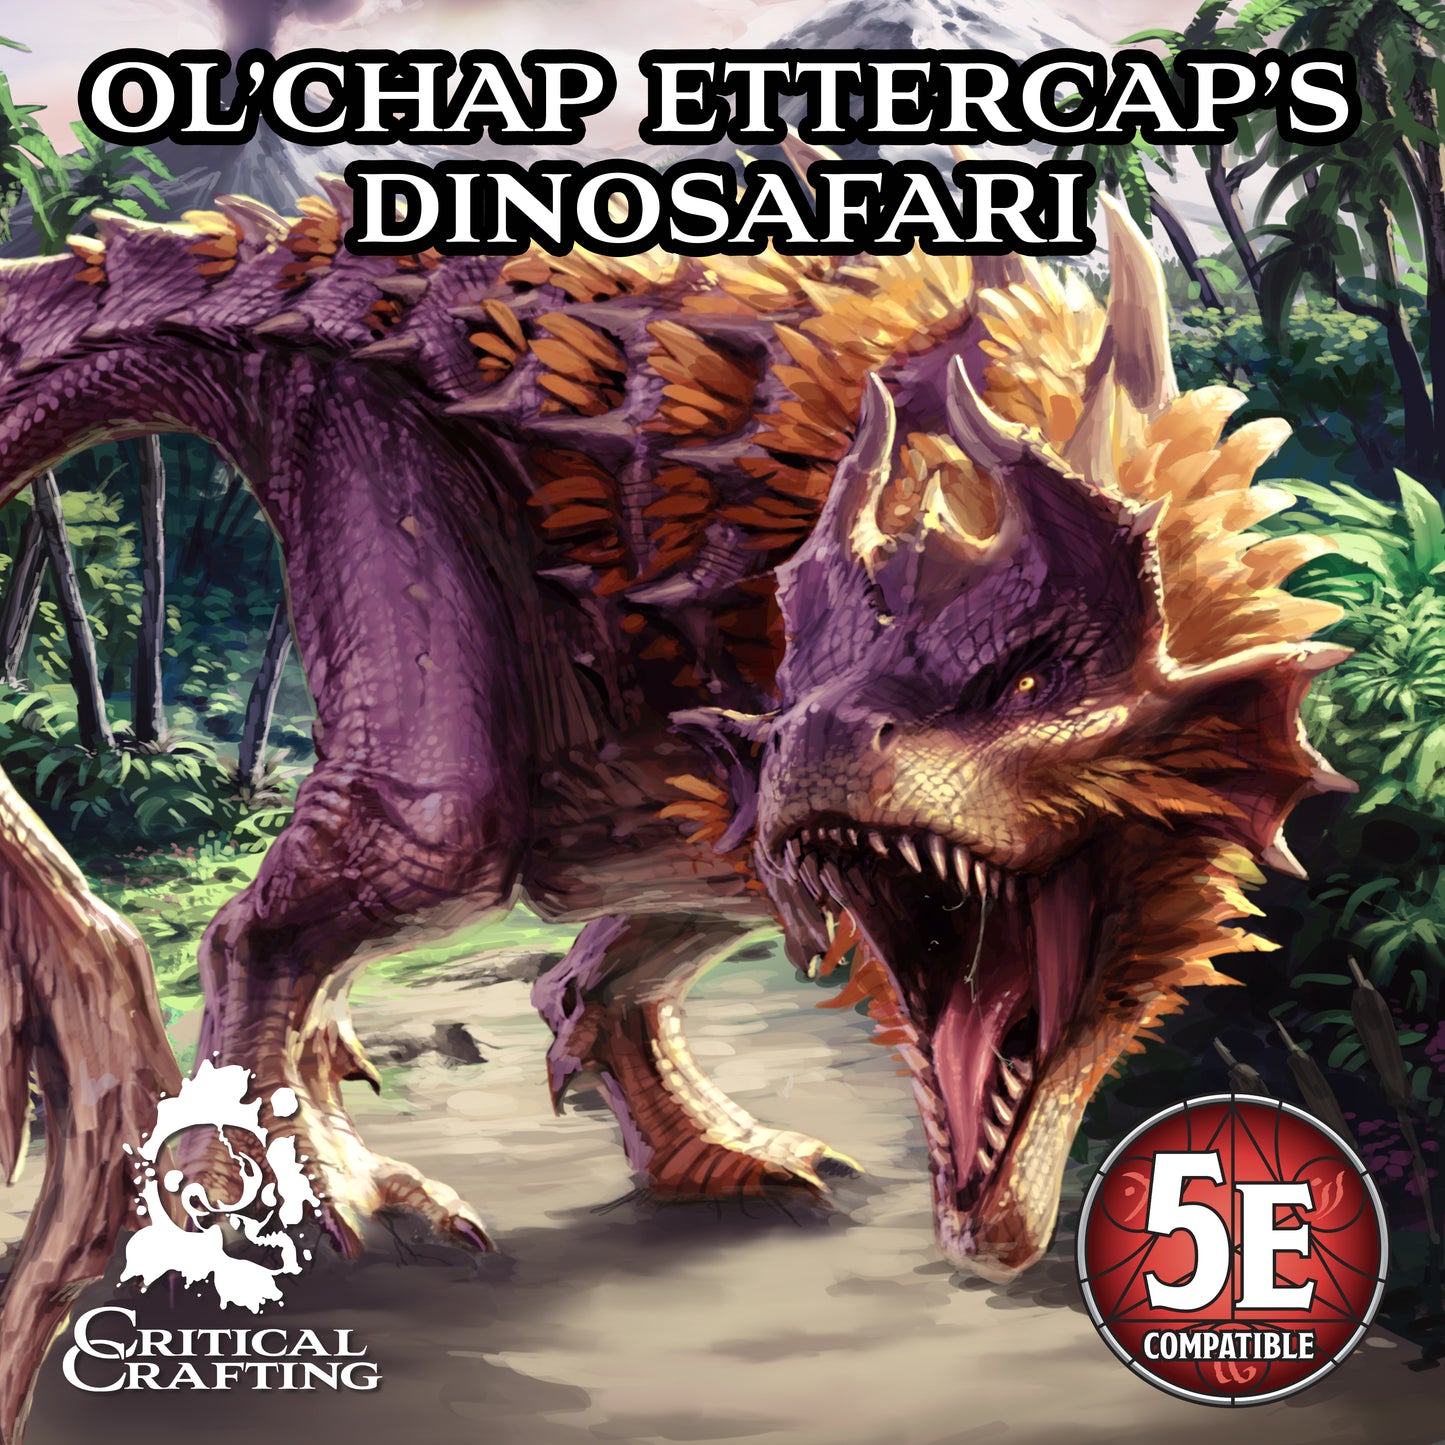 Ol' Chap Ettercap's Dinosafari PDF